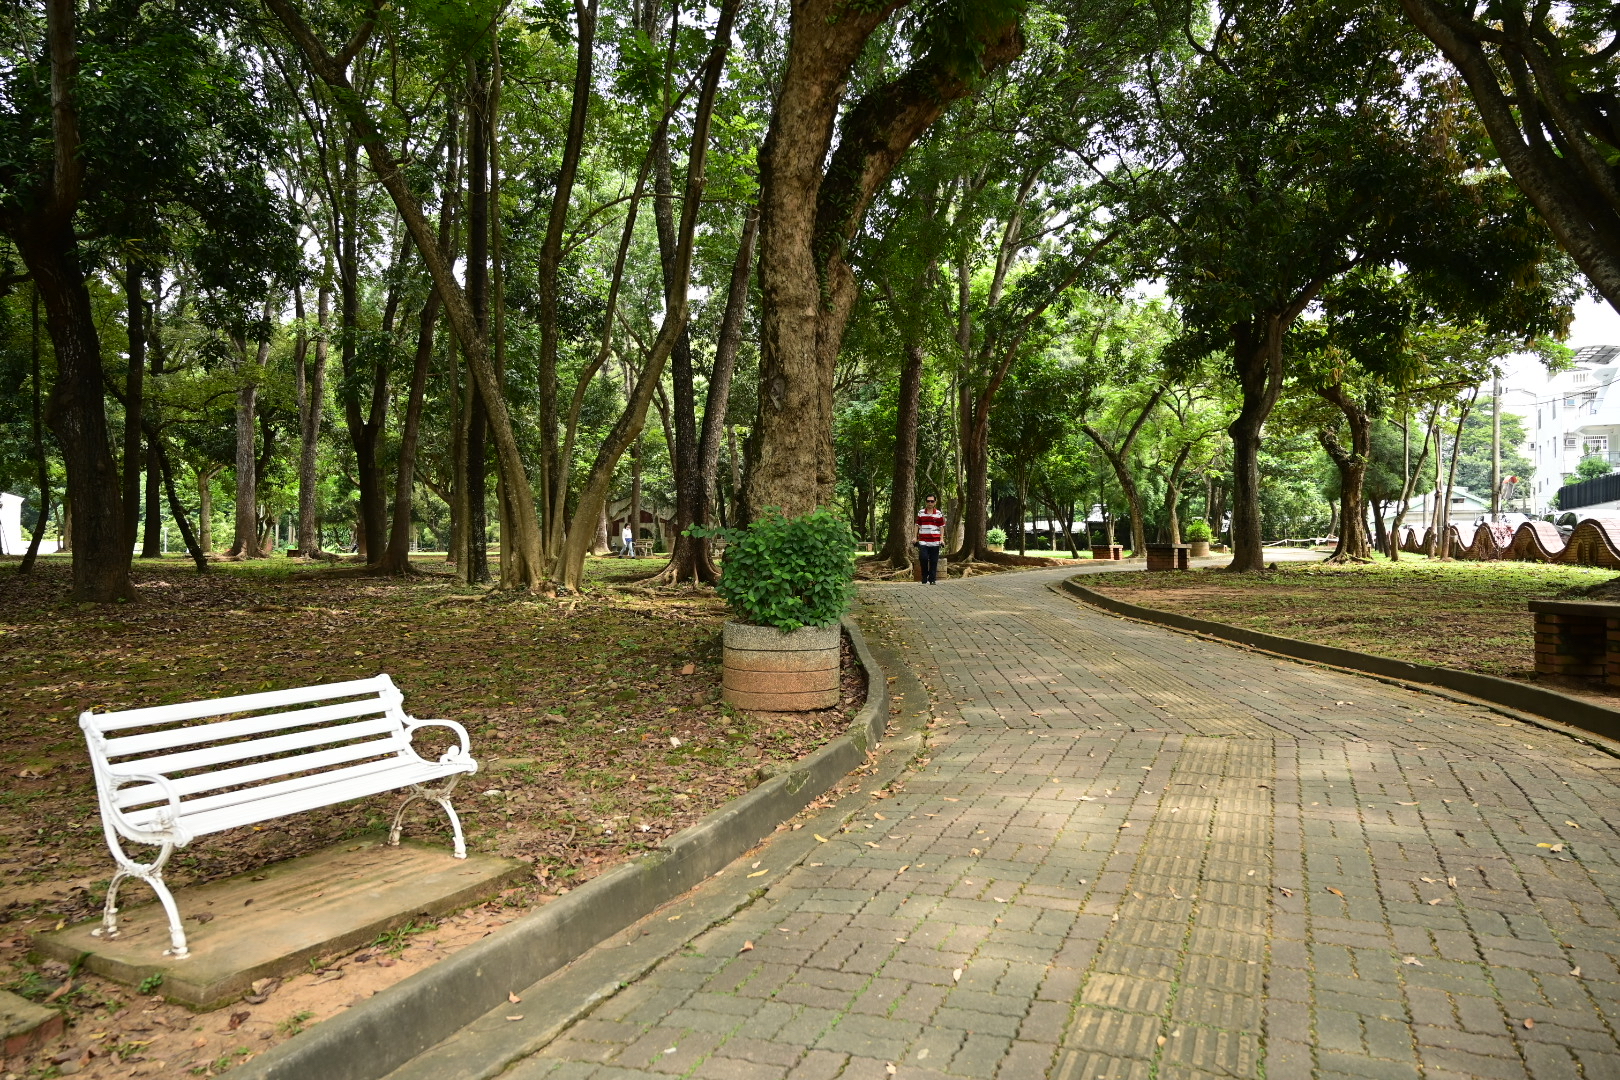 城市里的森林公园  台湾嘉义市中山公园，在城市里就能走进森林的地方，每天都有很多嘉义人在里面走路锻炼